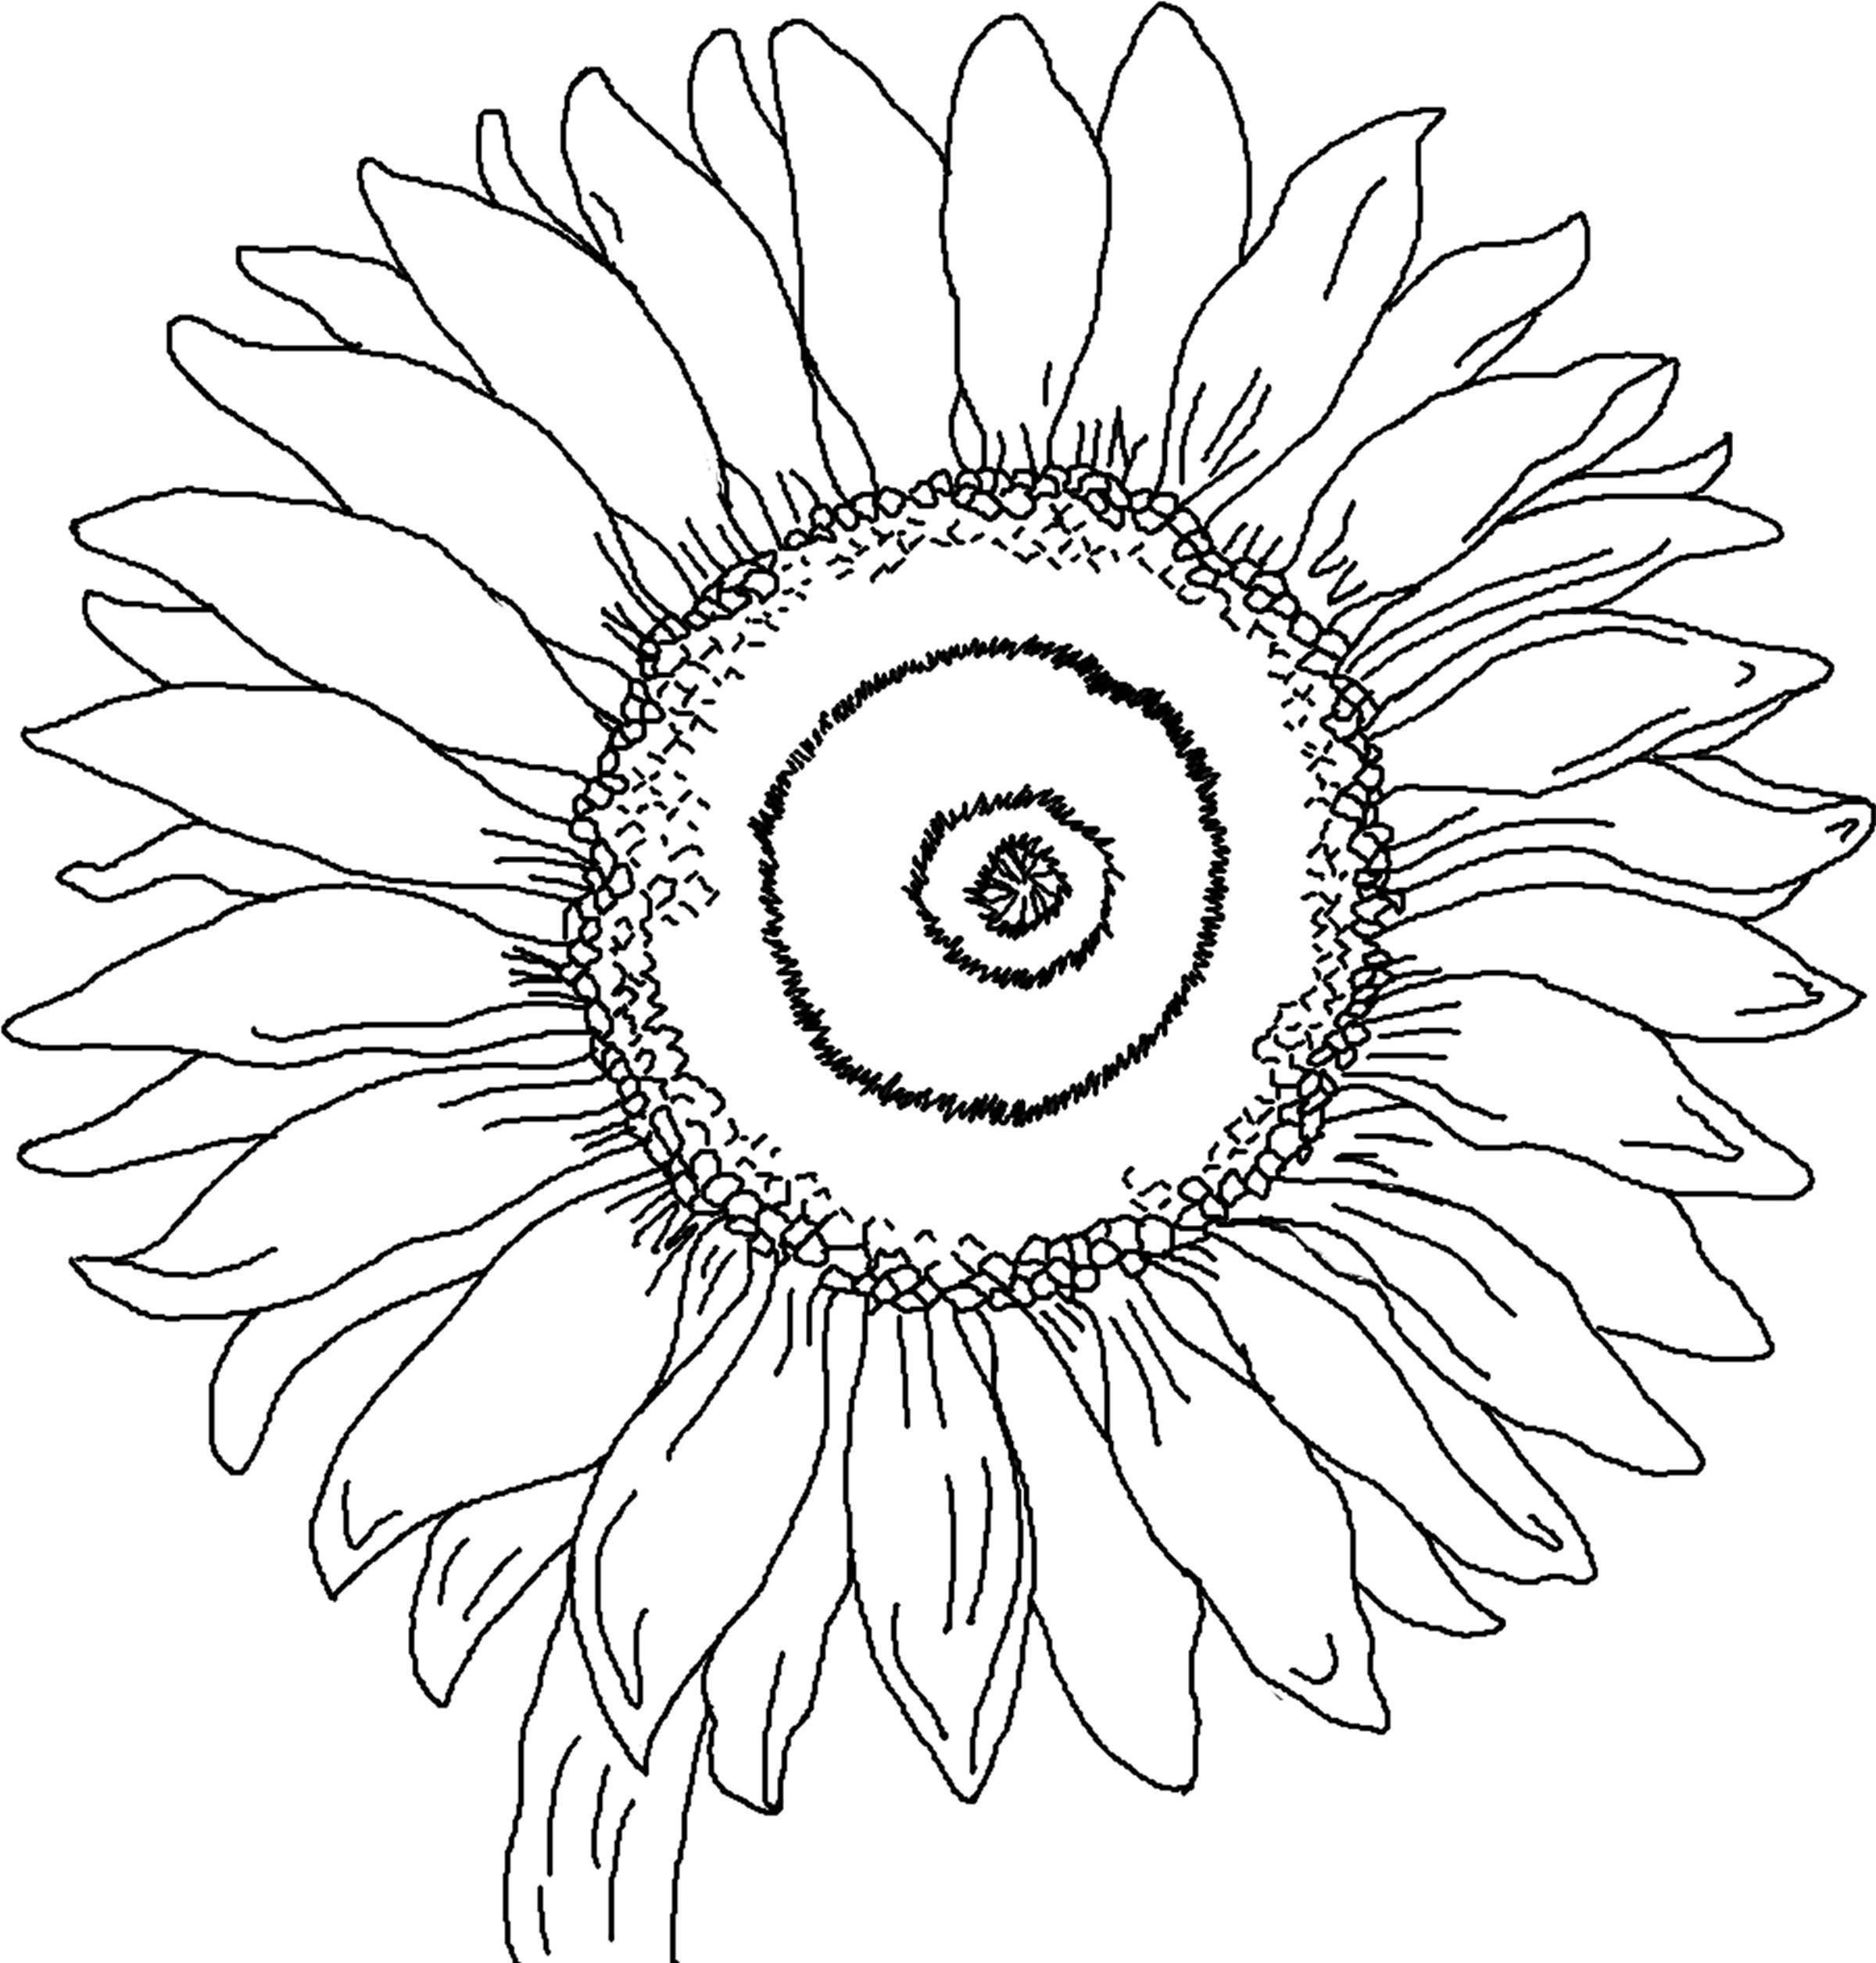 gambar sketsa bunga matahari